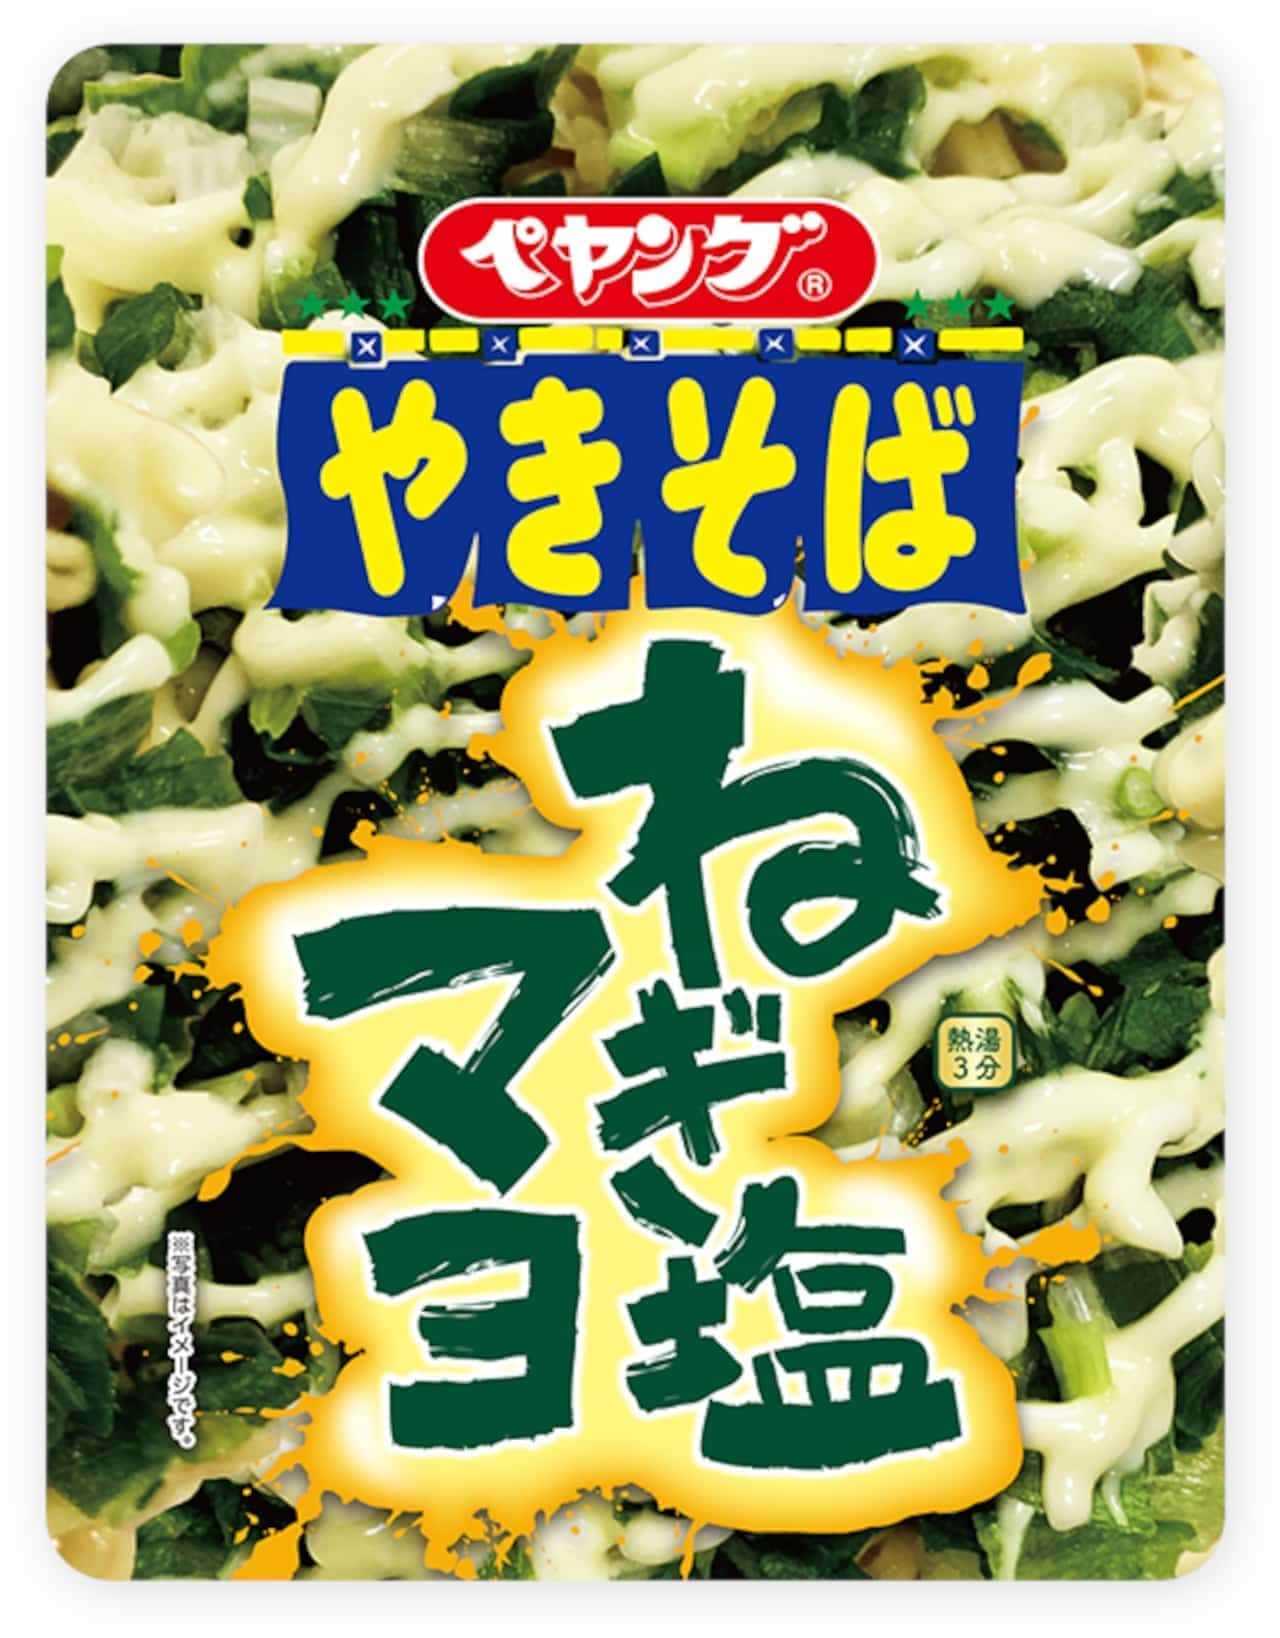 Peyang "Green onion salt mayonnaise fried noodles" "Green onion chili oil fried noodles"